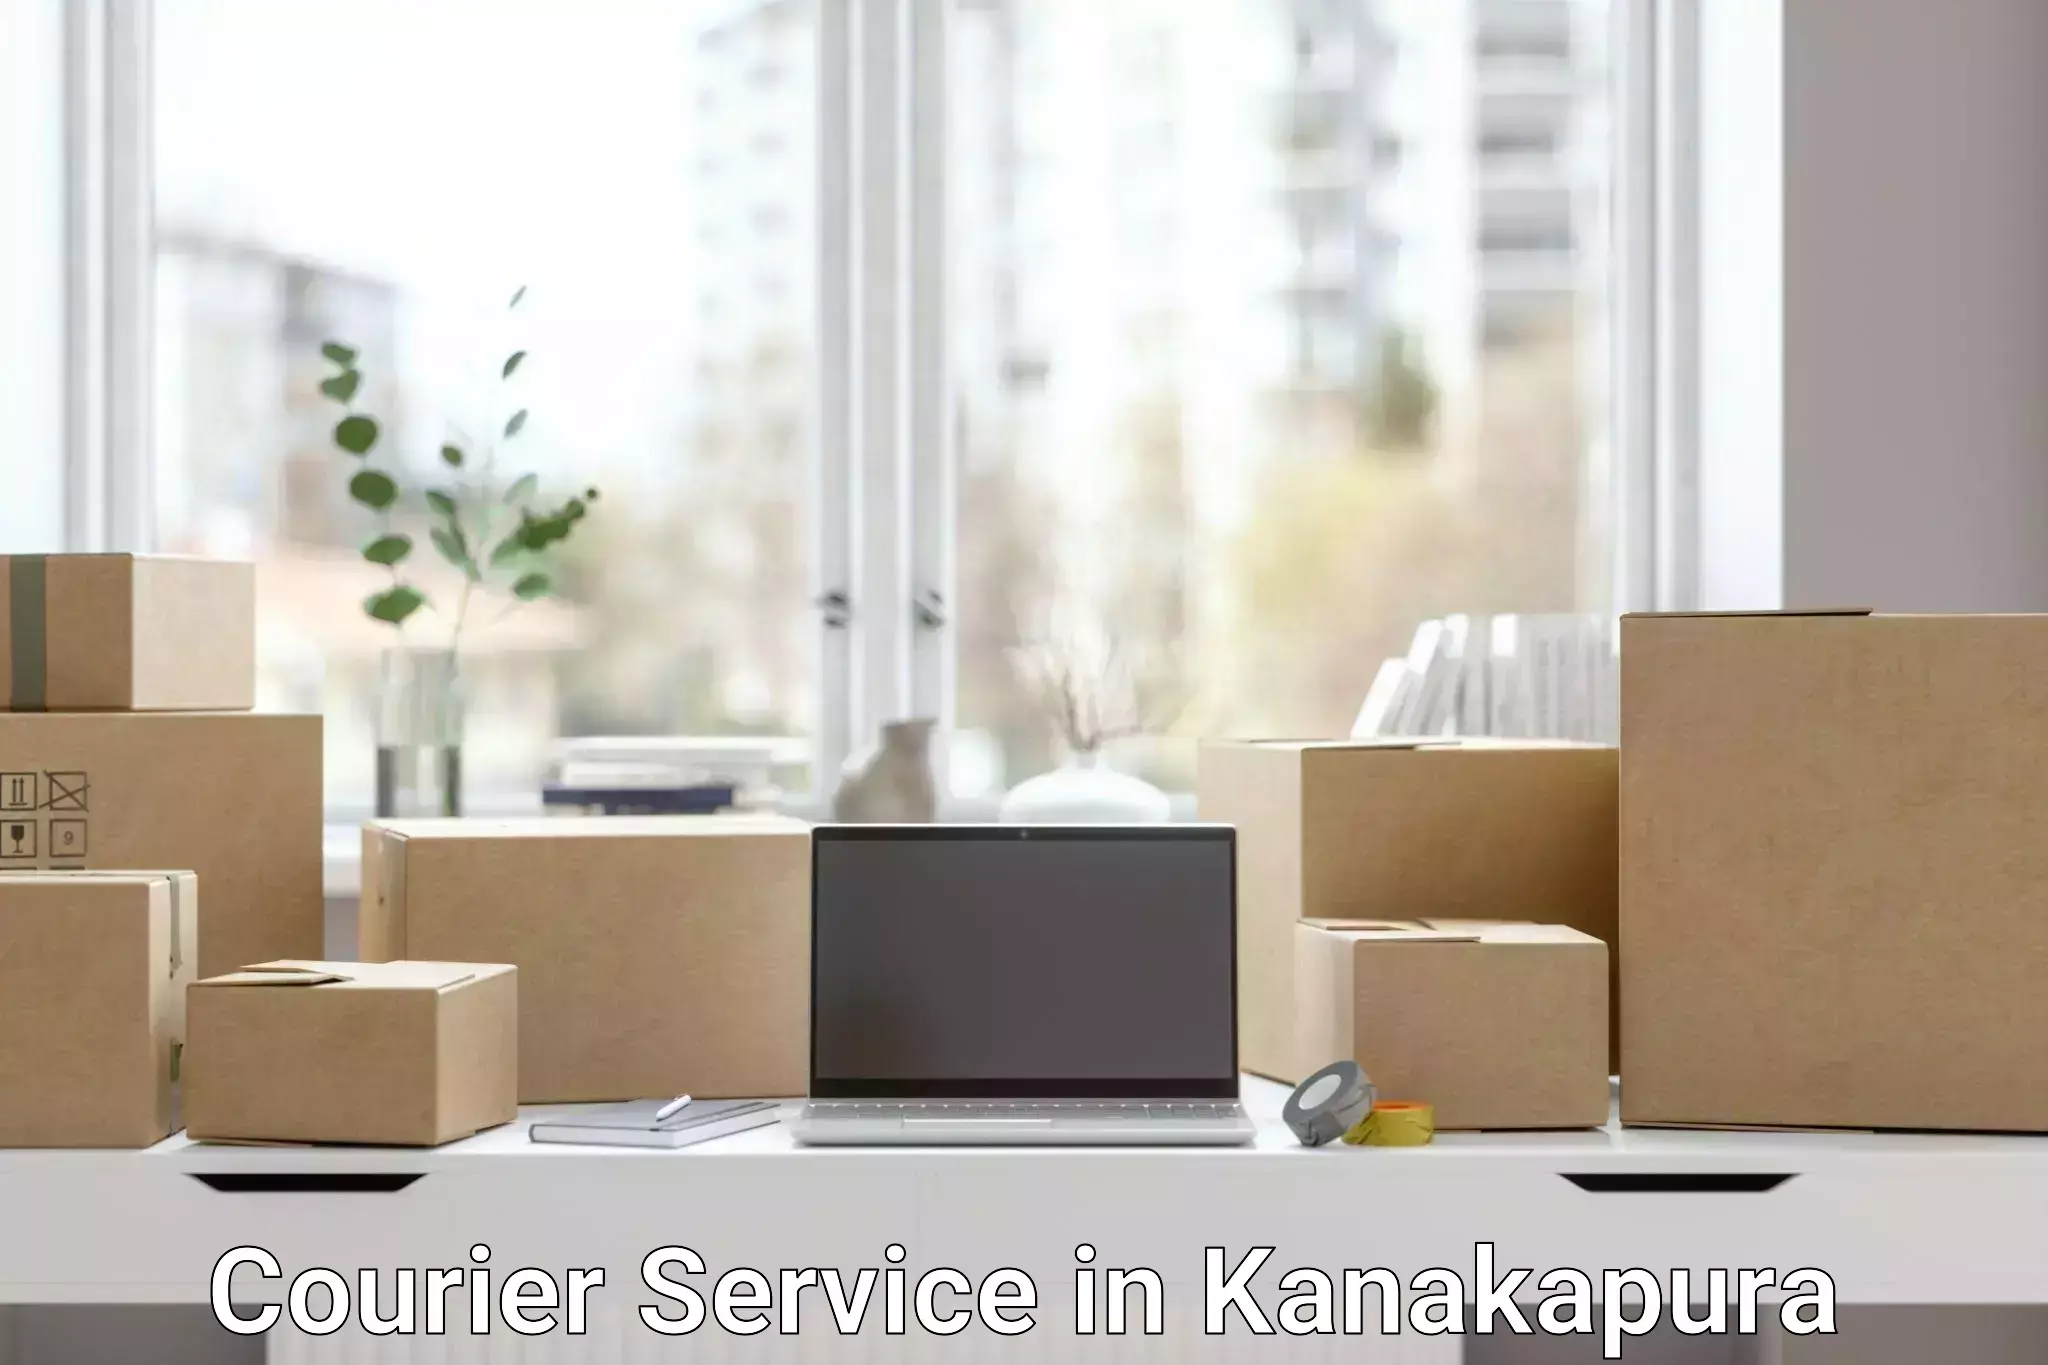 Efficient parcel delivery in Kanakapura